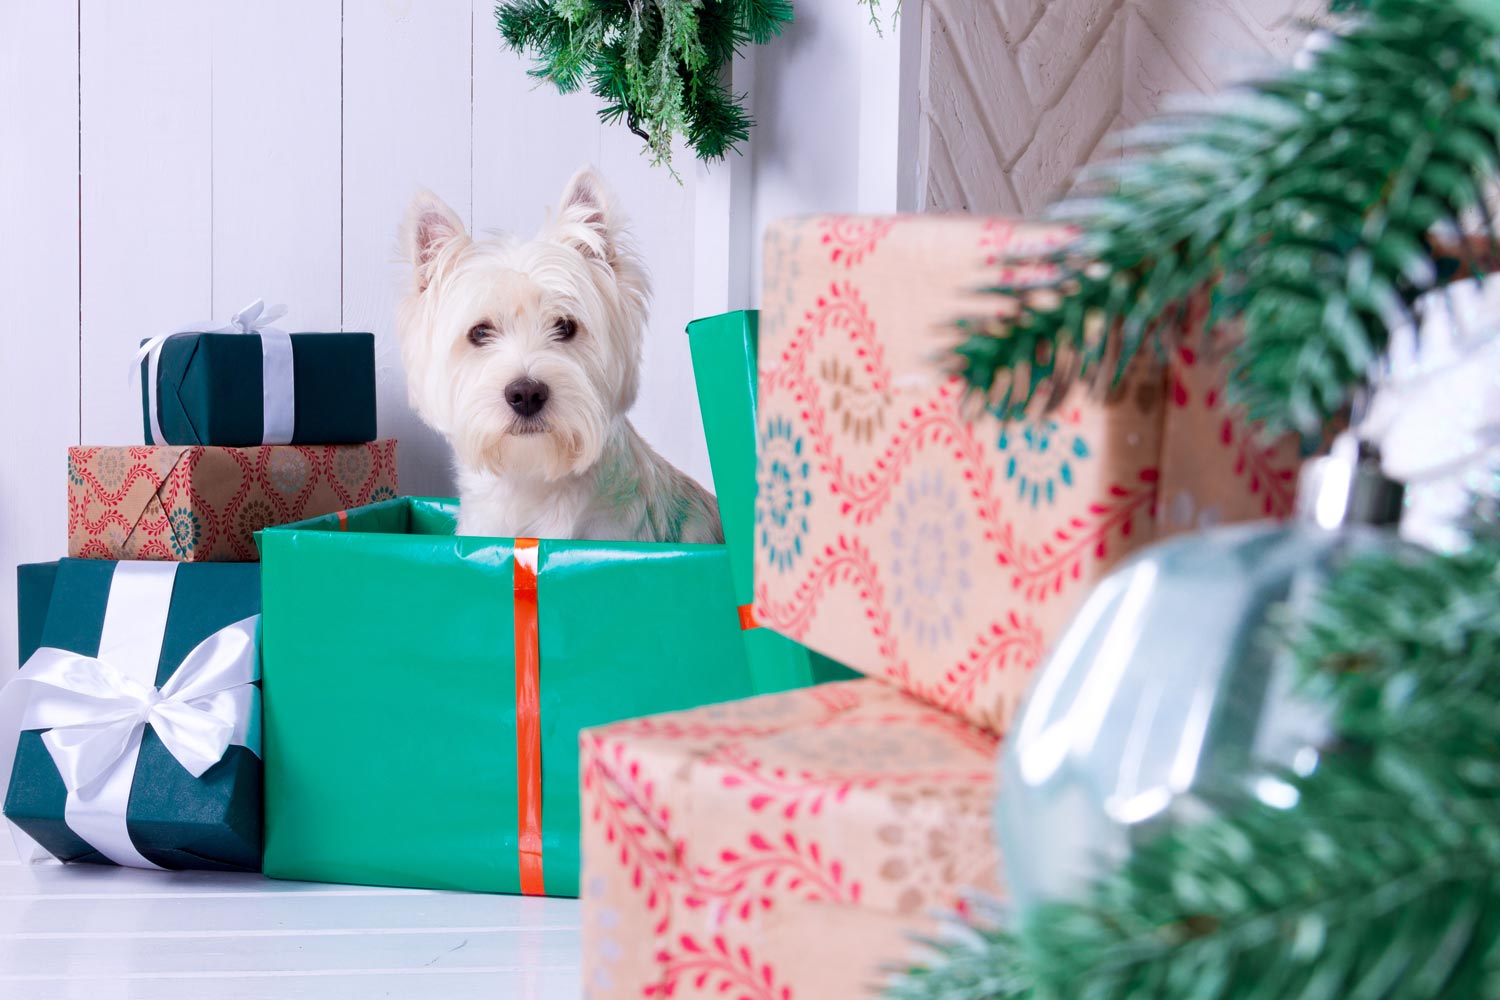 Los perros no se deben confundir con regalos